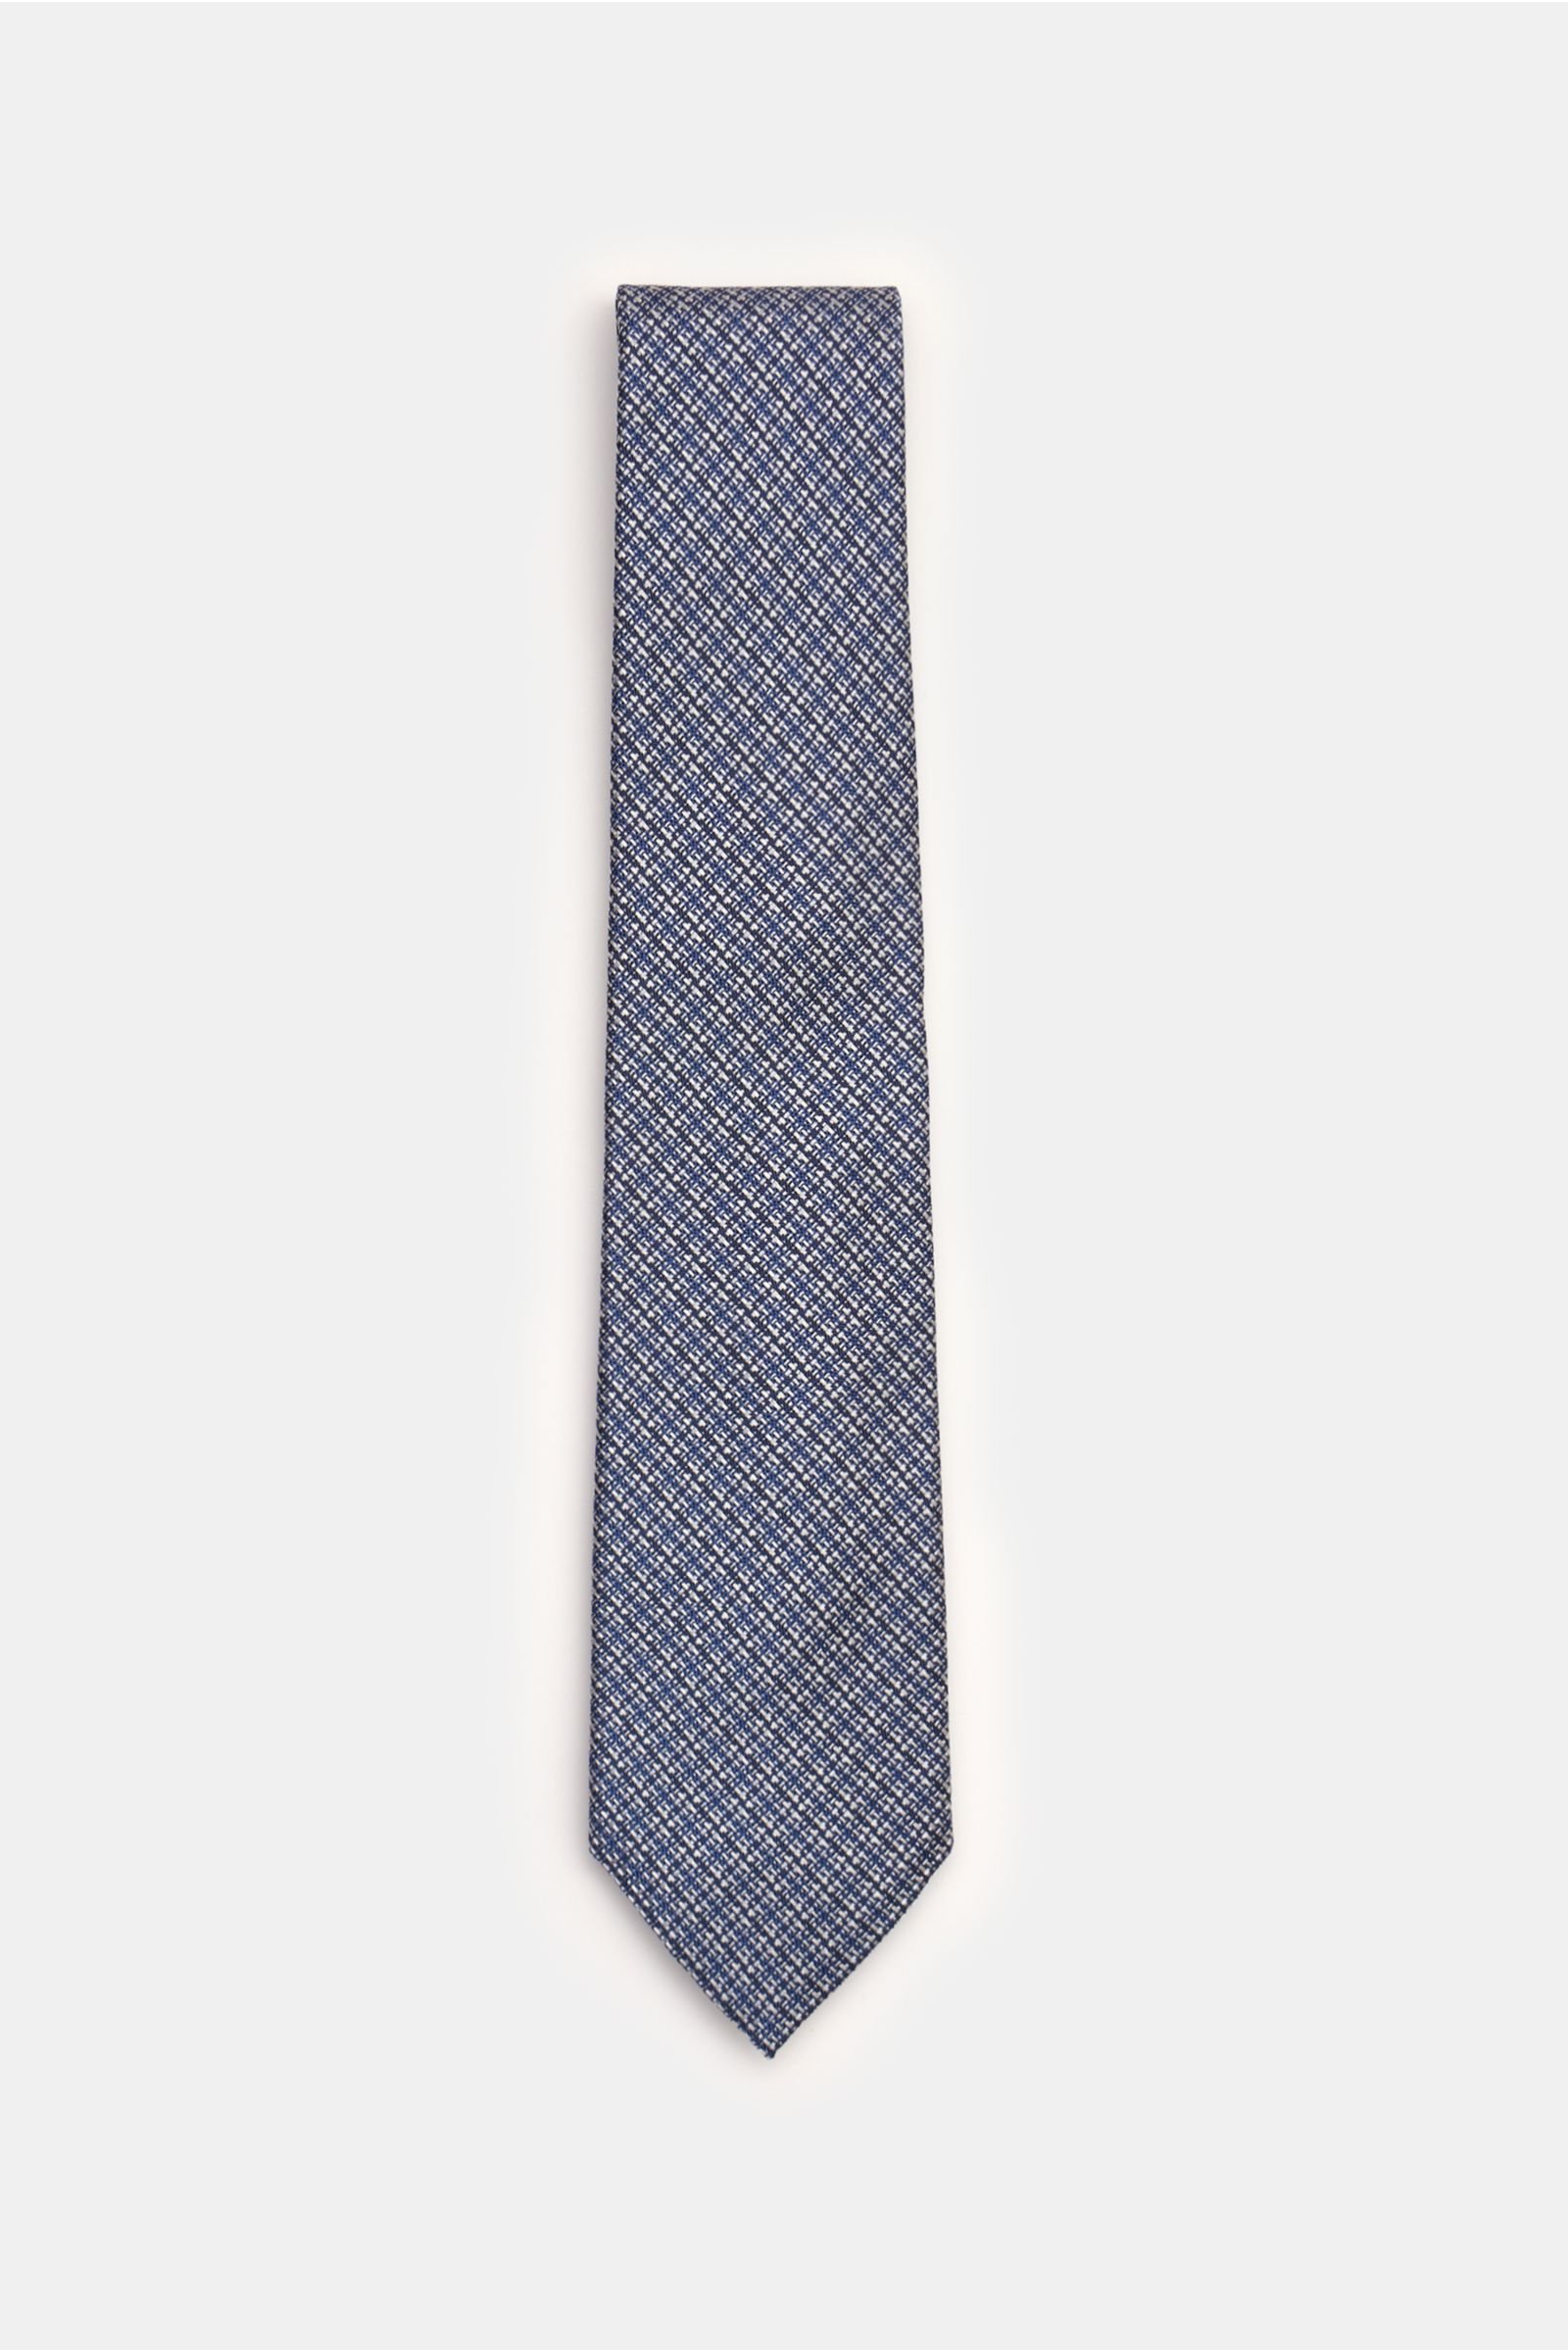 Silk tie smoky blue/silver-grey checked